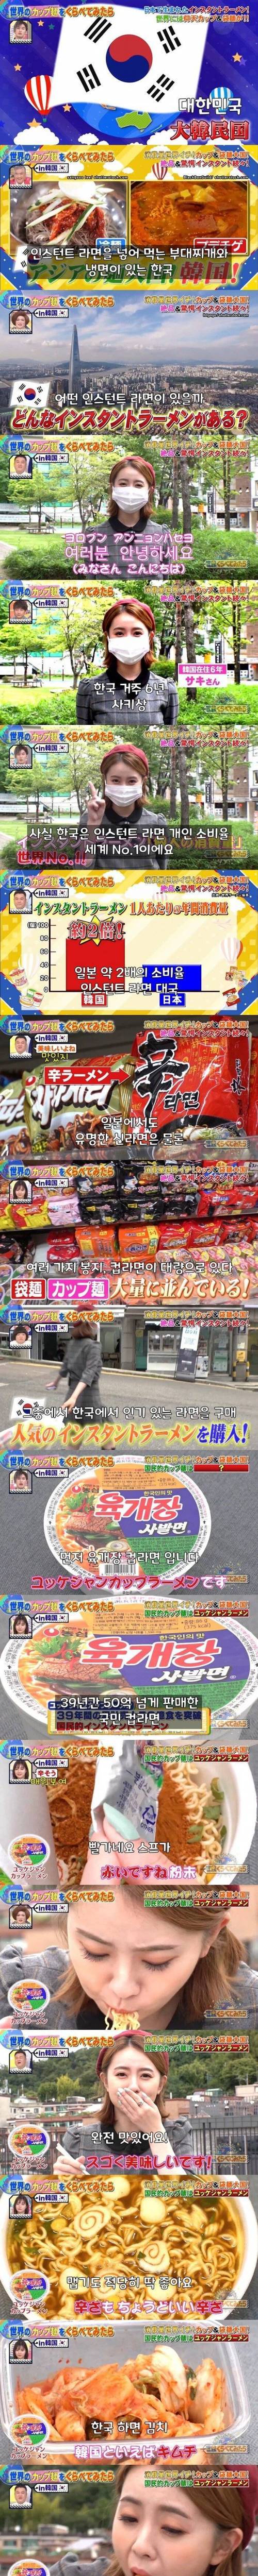 [스압] 일본 방송의 한국라면 소개.jpg